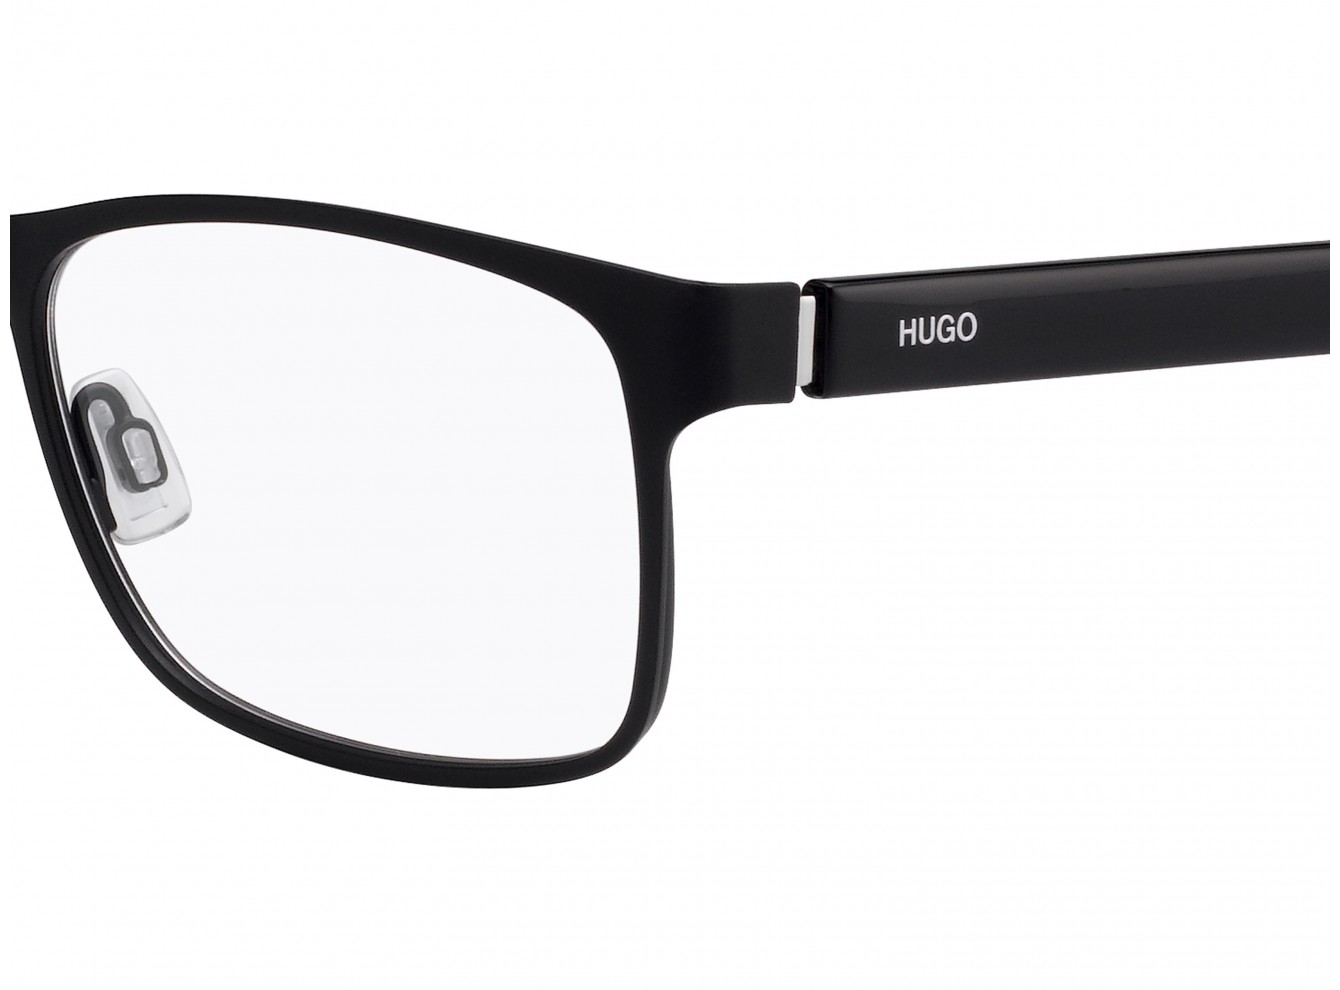 Hugo Boss HG 1015 003 - 3